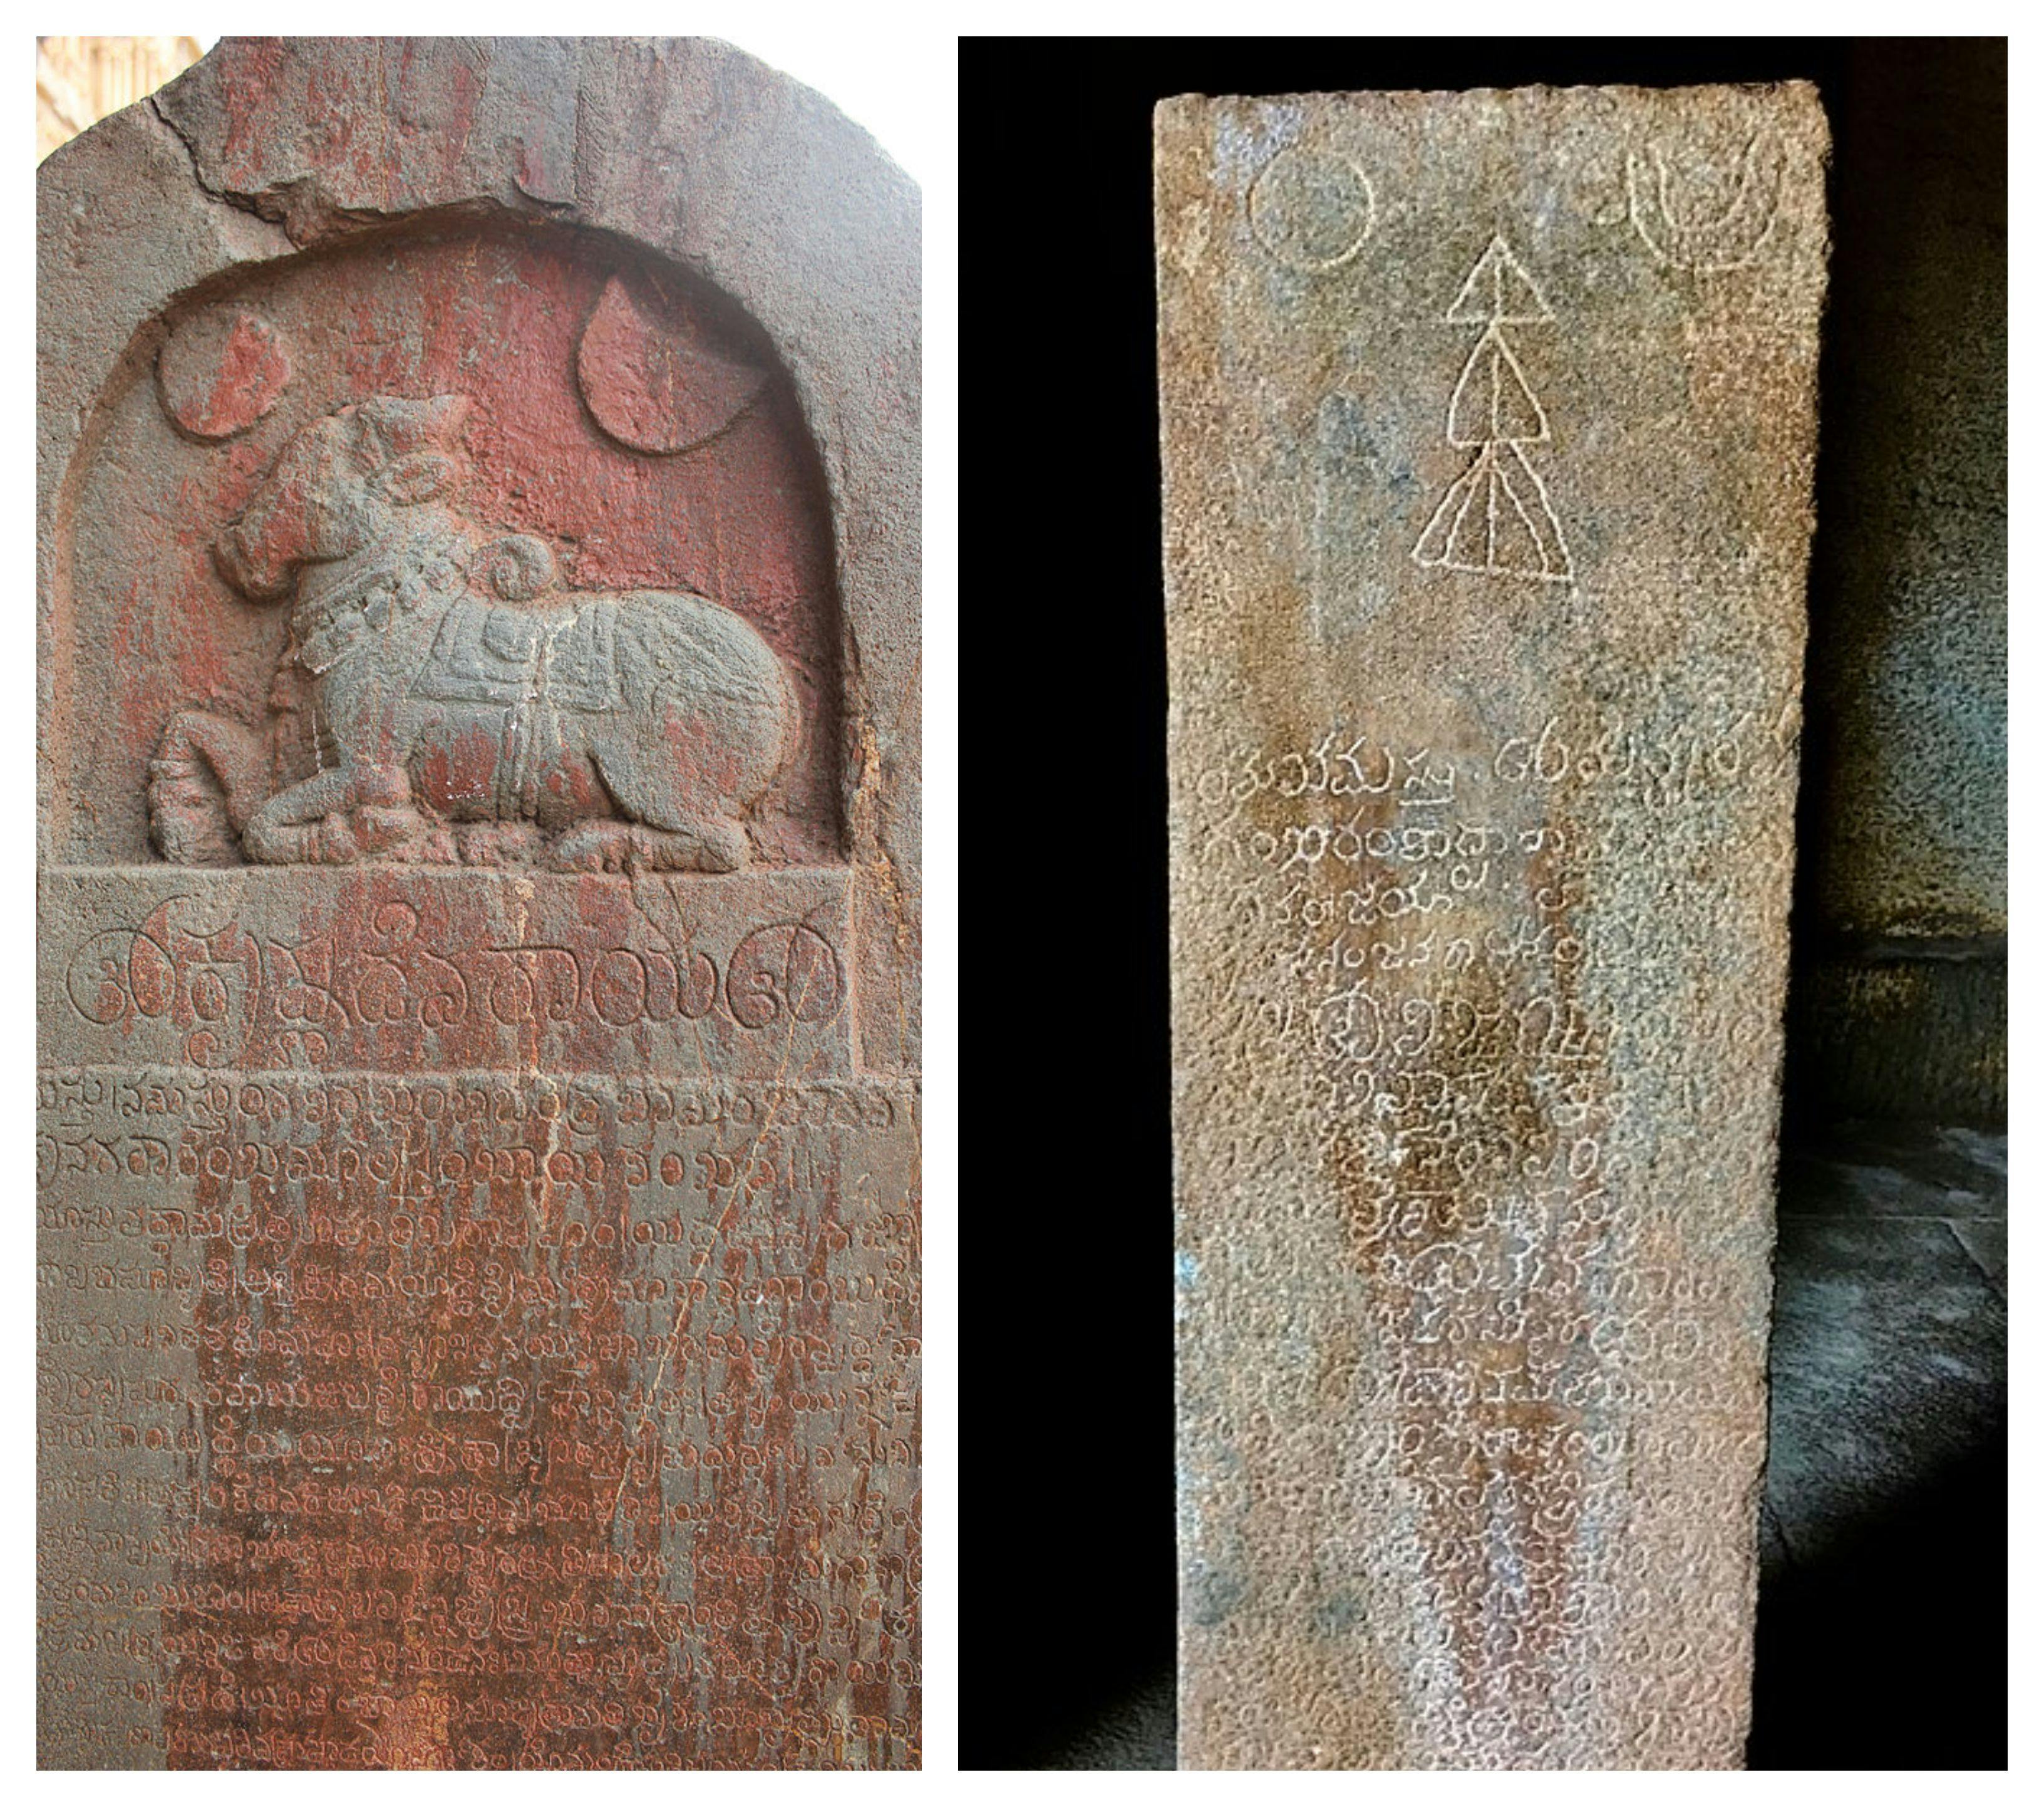 Two of the many Kannada inscriptions at Hampi